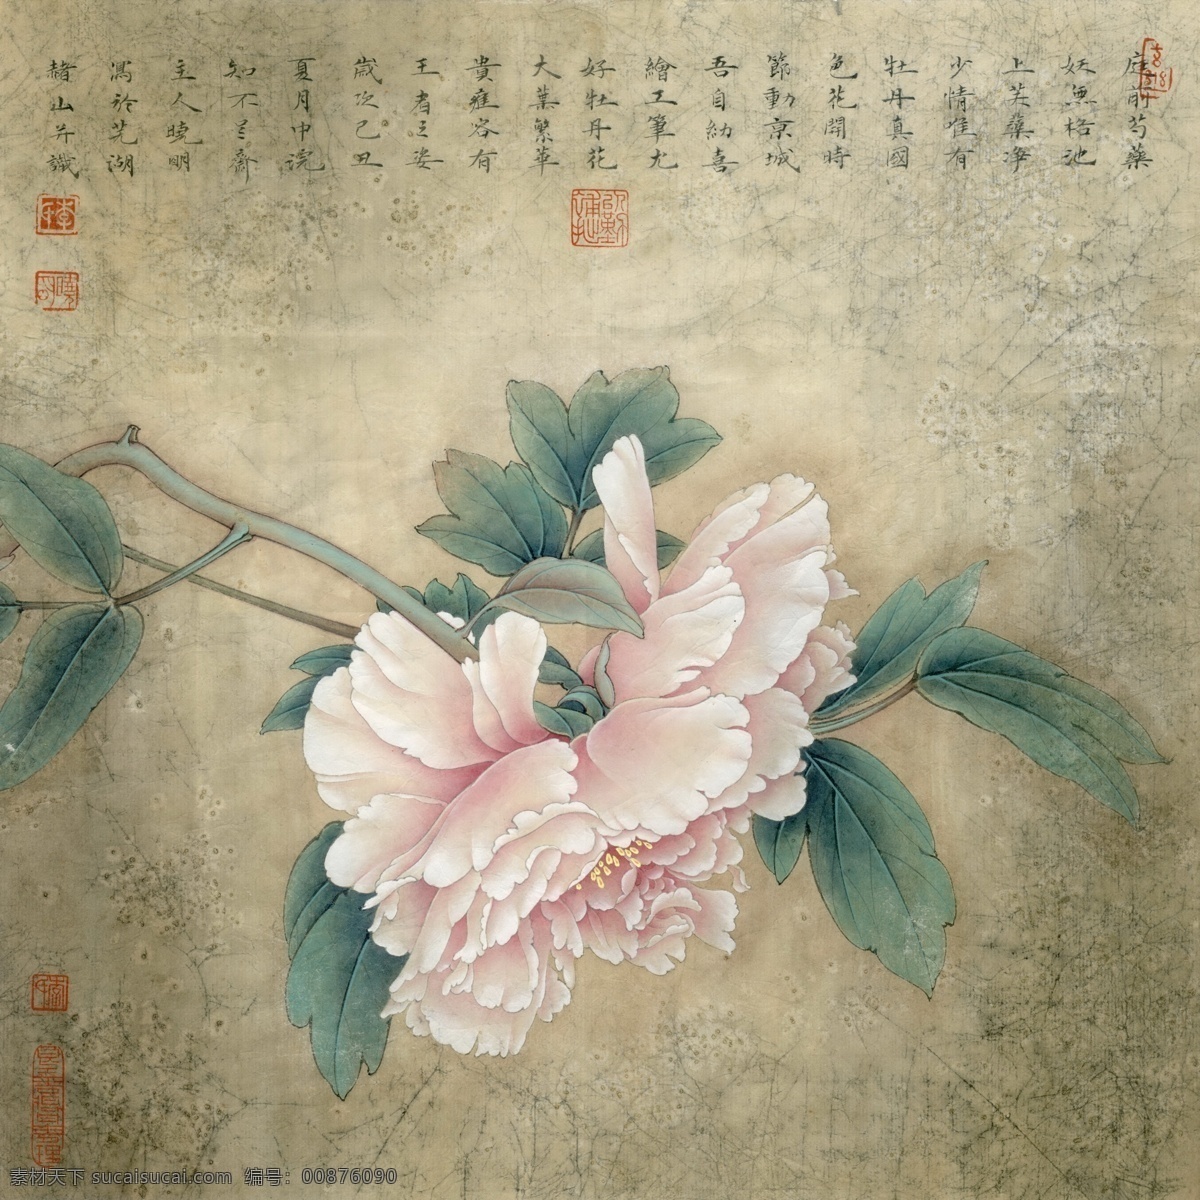 中式 古典 花鸟 工笔画 中国风绘画 精美绘画 植物花鸟 装饰画 古典画 牡丹花朵 文化艺术 绘画书法